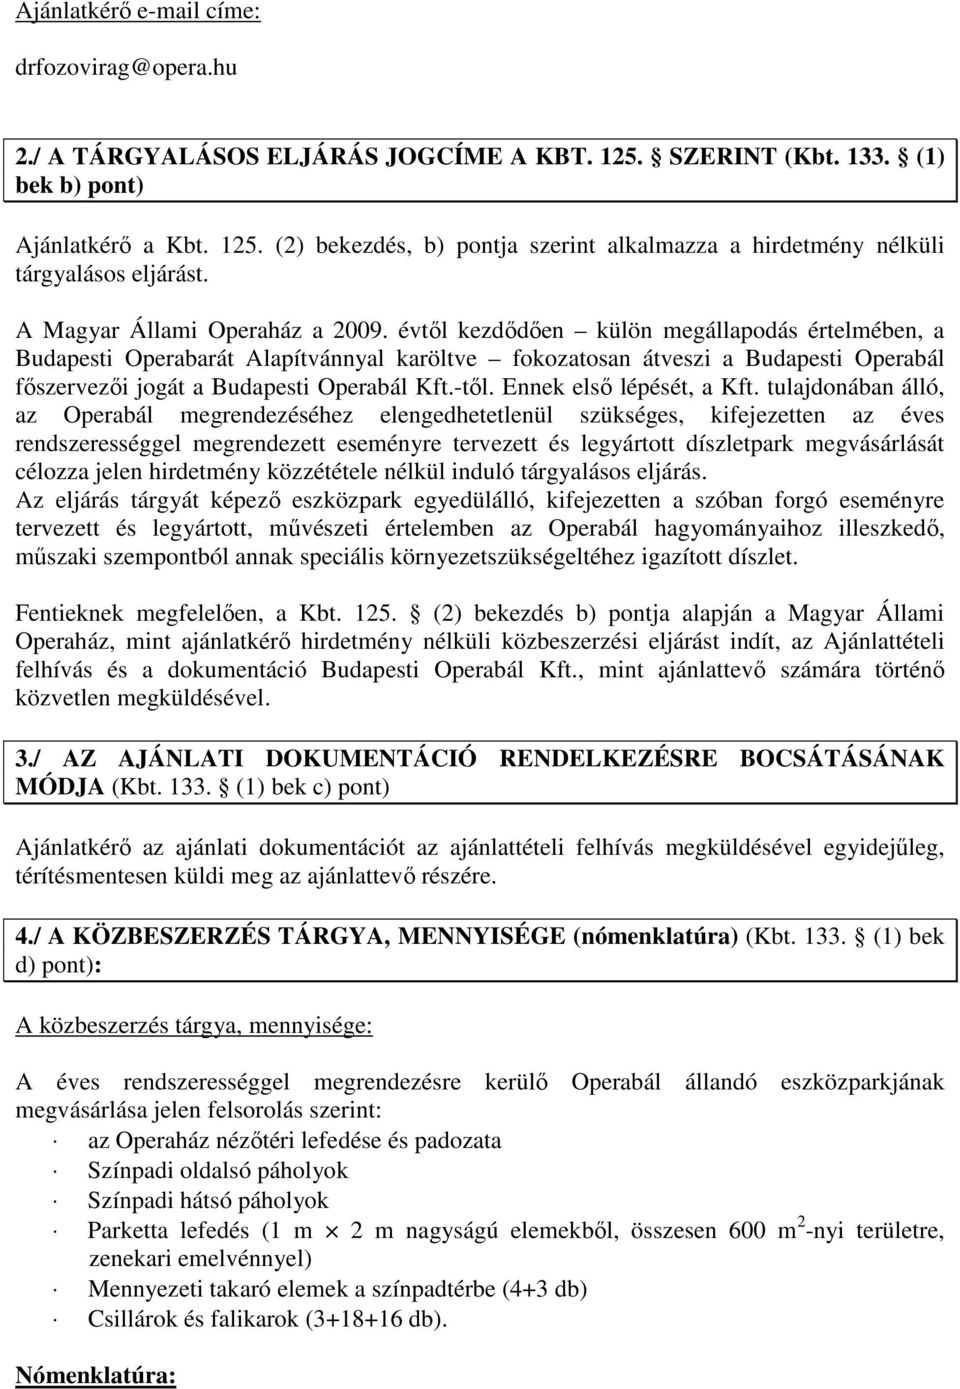 évtıl kezdıdıen külön megállapodás értelmében, a Budapesti Operabarát Alapítvánnyal karöltve fokozatosan átveszi a Budapesti Operabál fıszervezıi jogát a Budapesti Operabál Kft.-tıl.